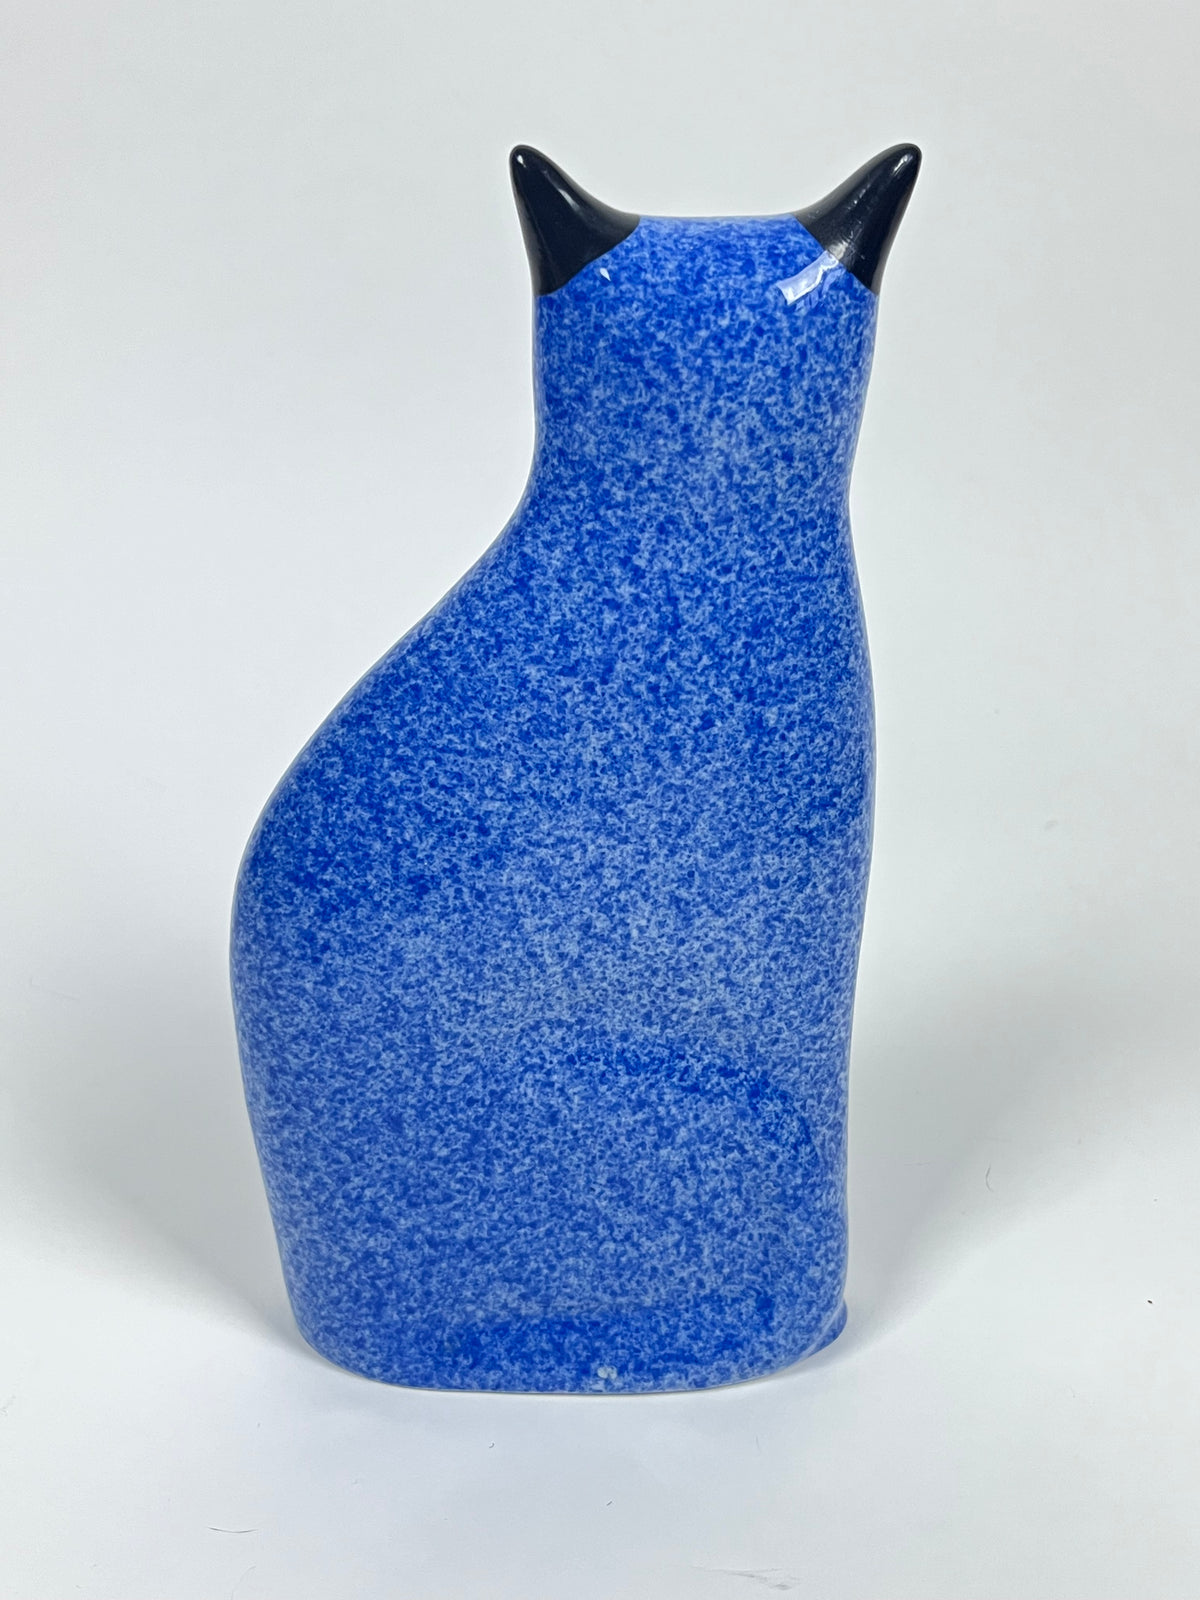 Vintage Blue Cat Sculpture